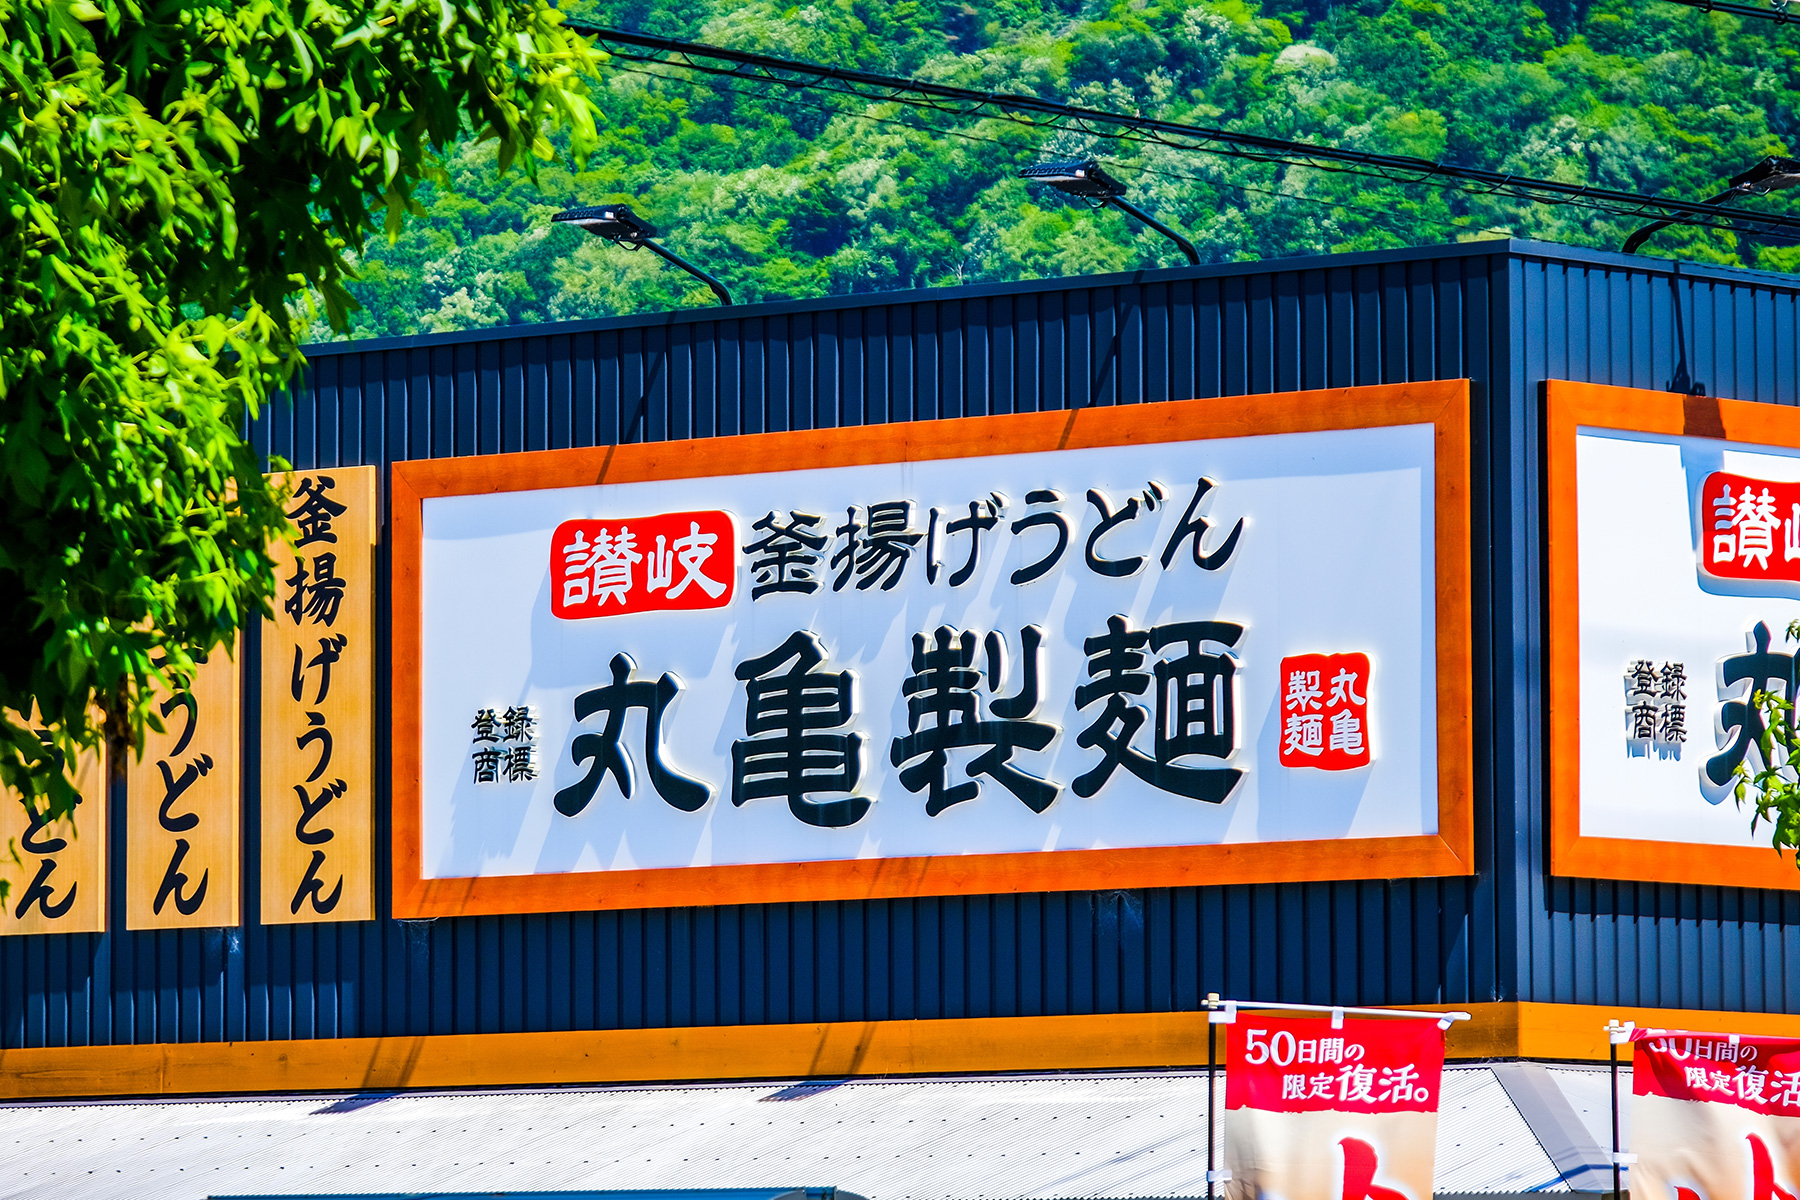 丸亀製麺の創業者が「ビリオネア」に　粟田貴也、資産1600億円超